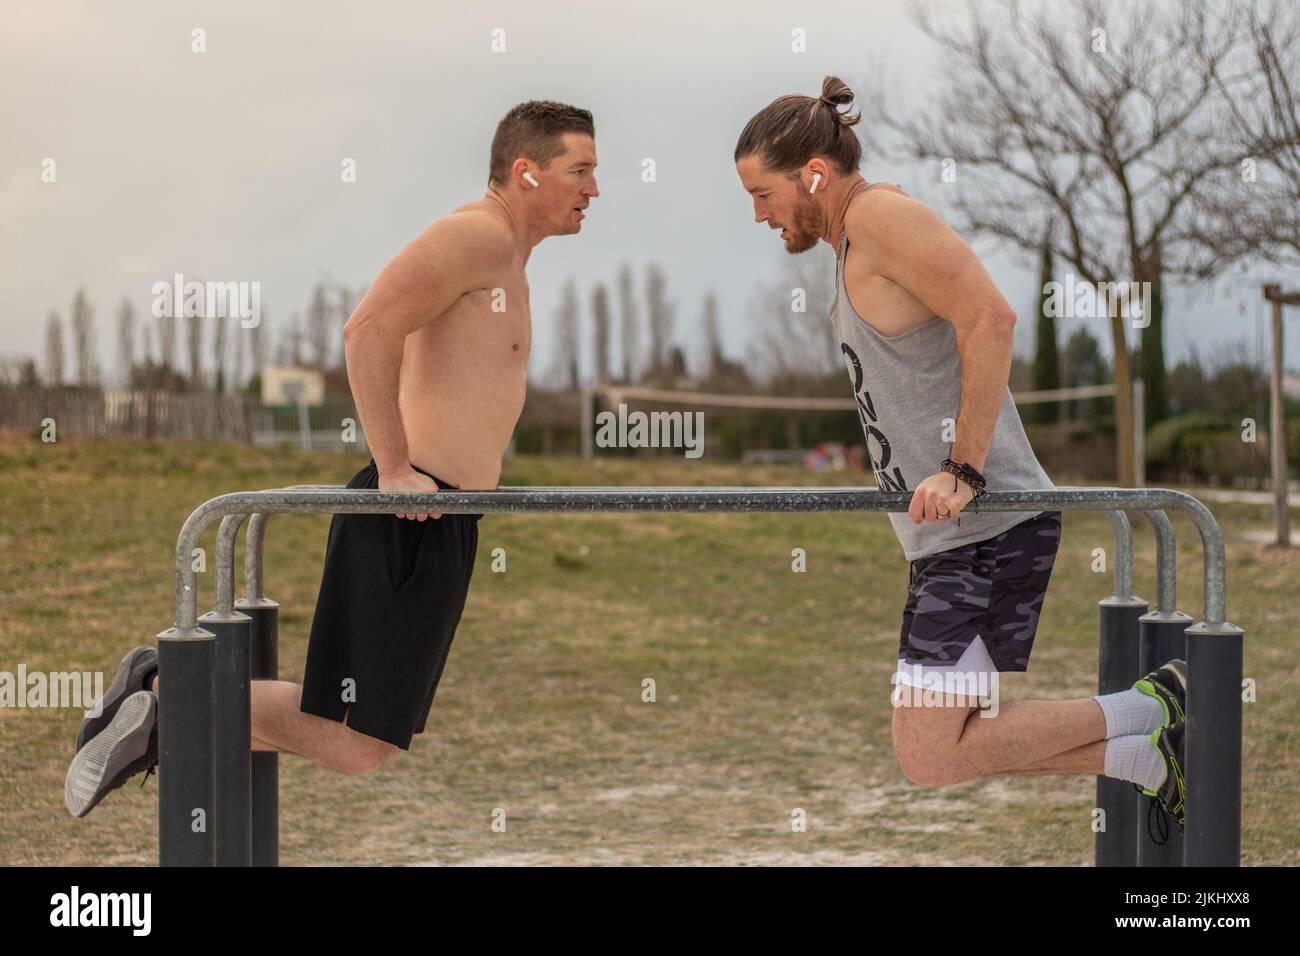 Une photo de deux hommes faisant une séance de sport ensemble, face à face sur la barre transversale en équilibre Banque D'Images